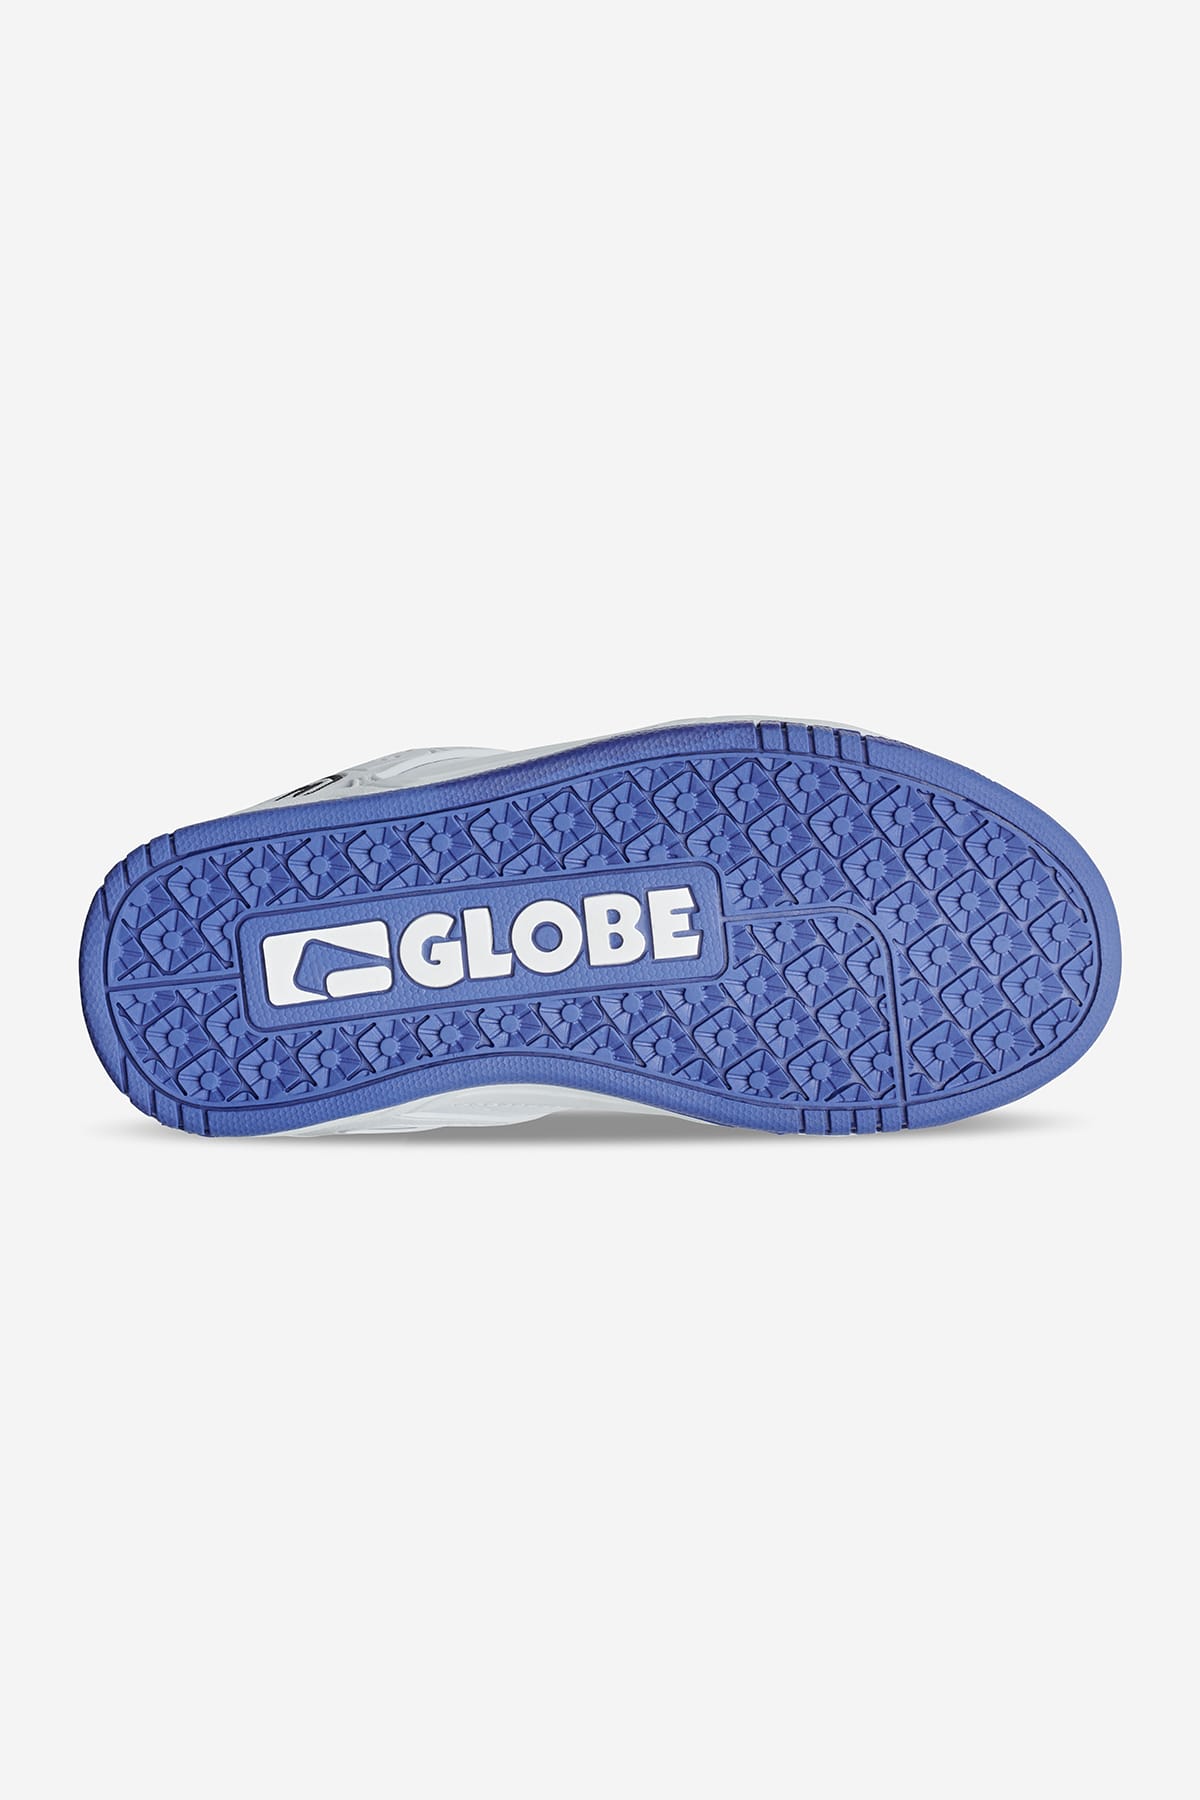 Globe - Tilt Kids - White/Cobalt - skateboard Zapatos